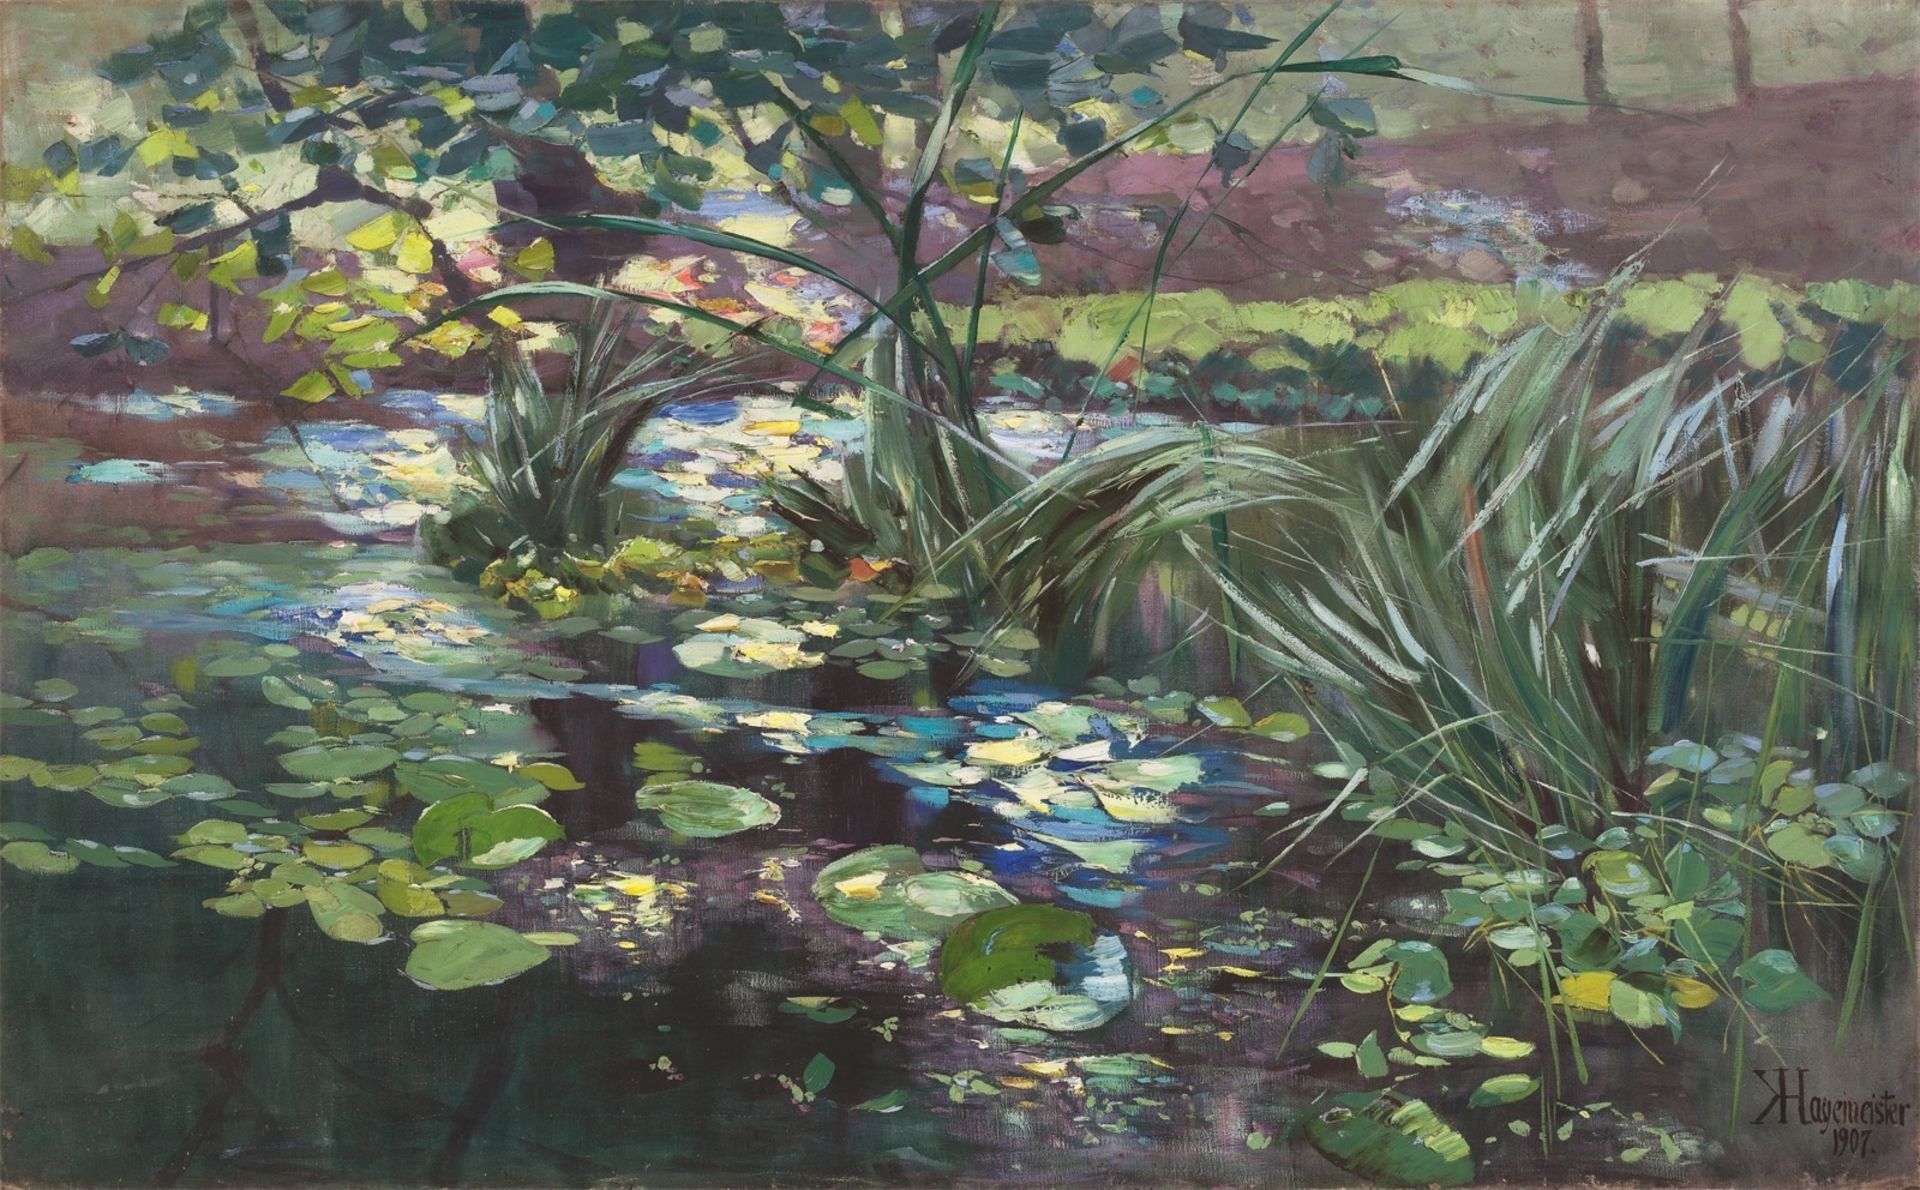 Karl Hagemeister. ”Teich in der Mark mit Seerosen und Schilfhalmen”. 1907